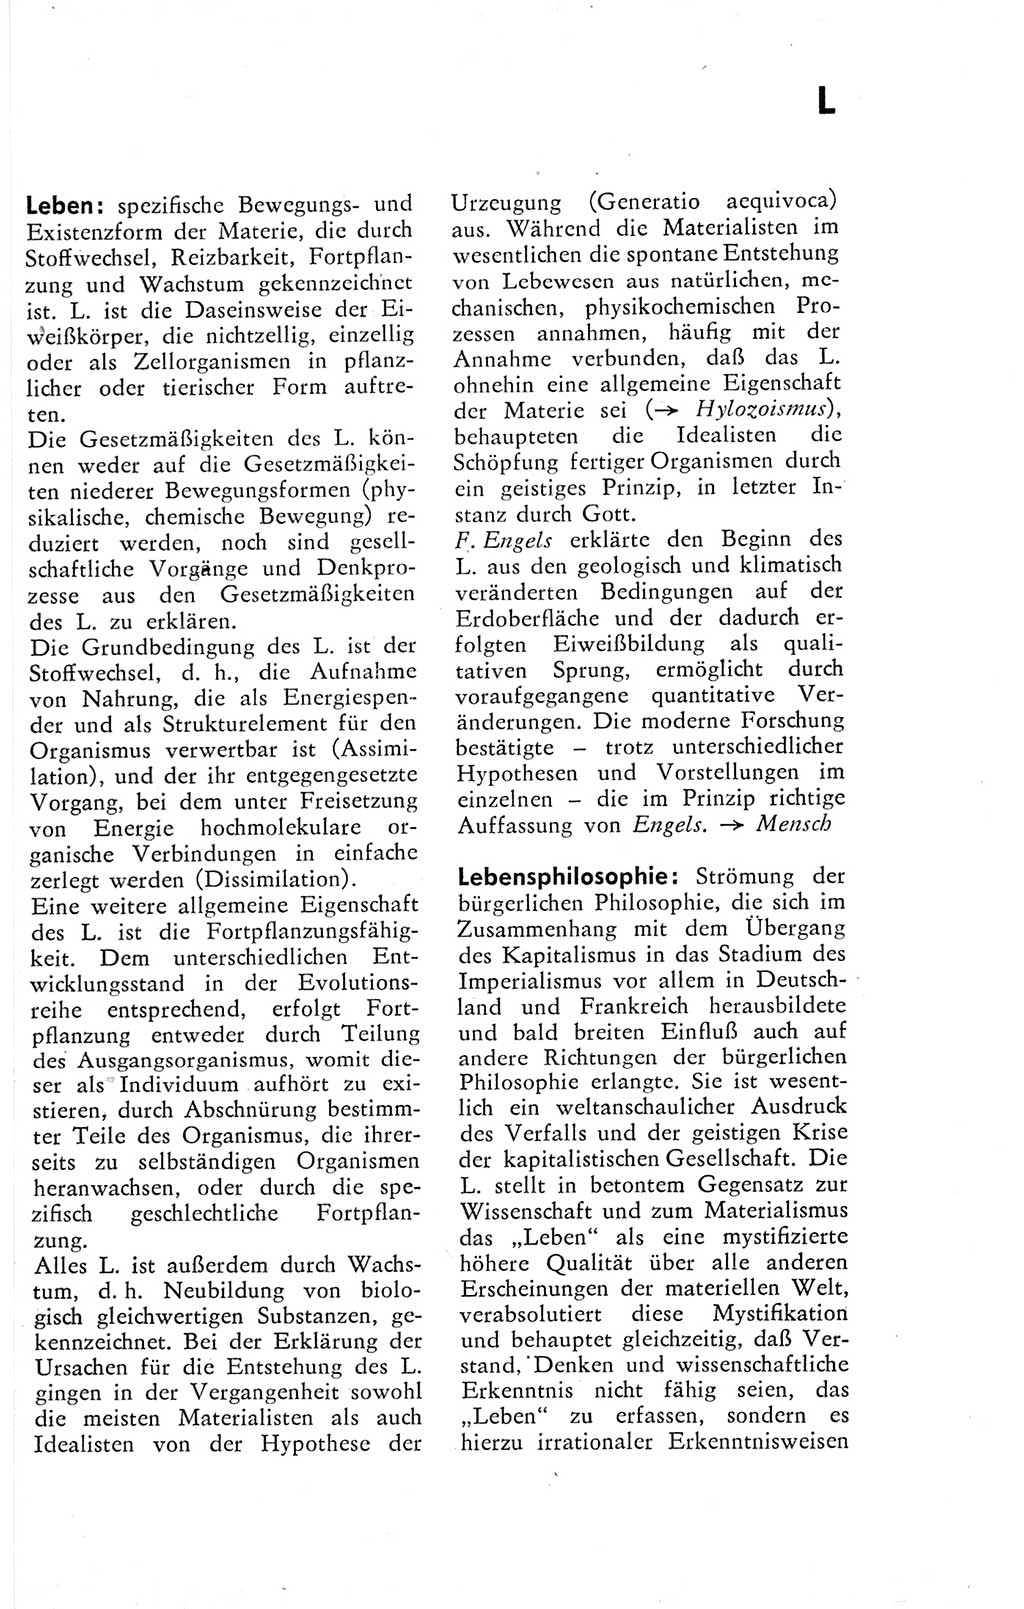 Kleines Wörterbuch der marxistisch-leninistischen Philosophie [Deutsche Demokratische Republik (DDR)] 1974, Seite 169 (Kl. Wb. ML Phil. DDR 1974, S. 169)